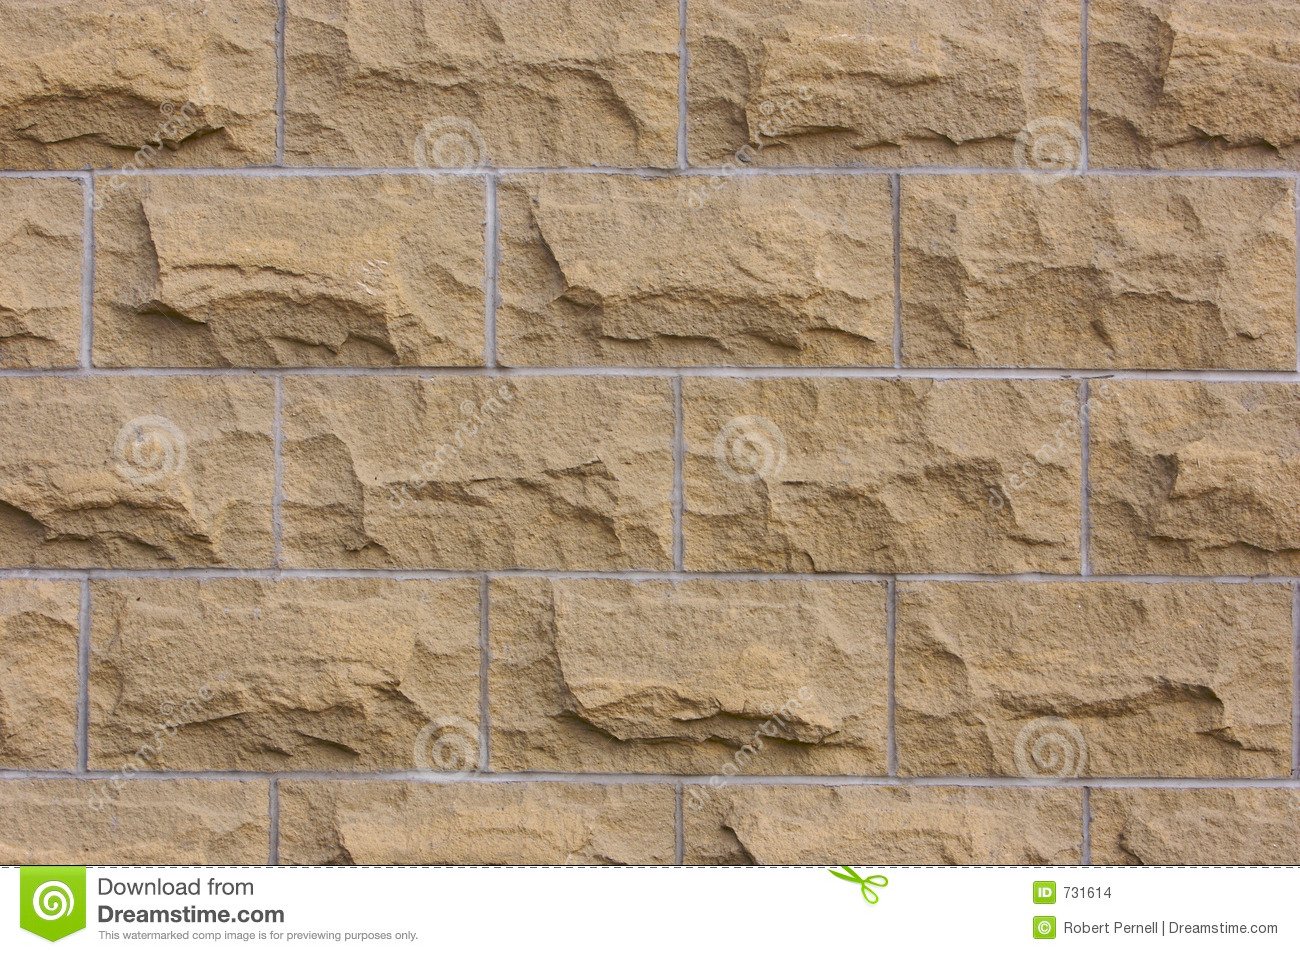 37+] Wallpaper for Concrete Blocks - WallpaperSafari